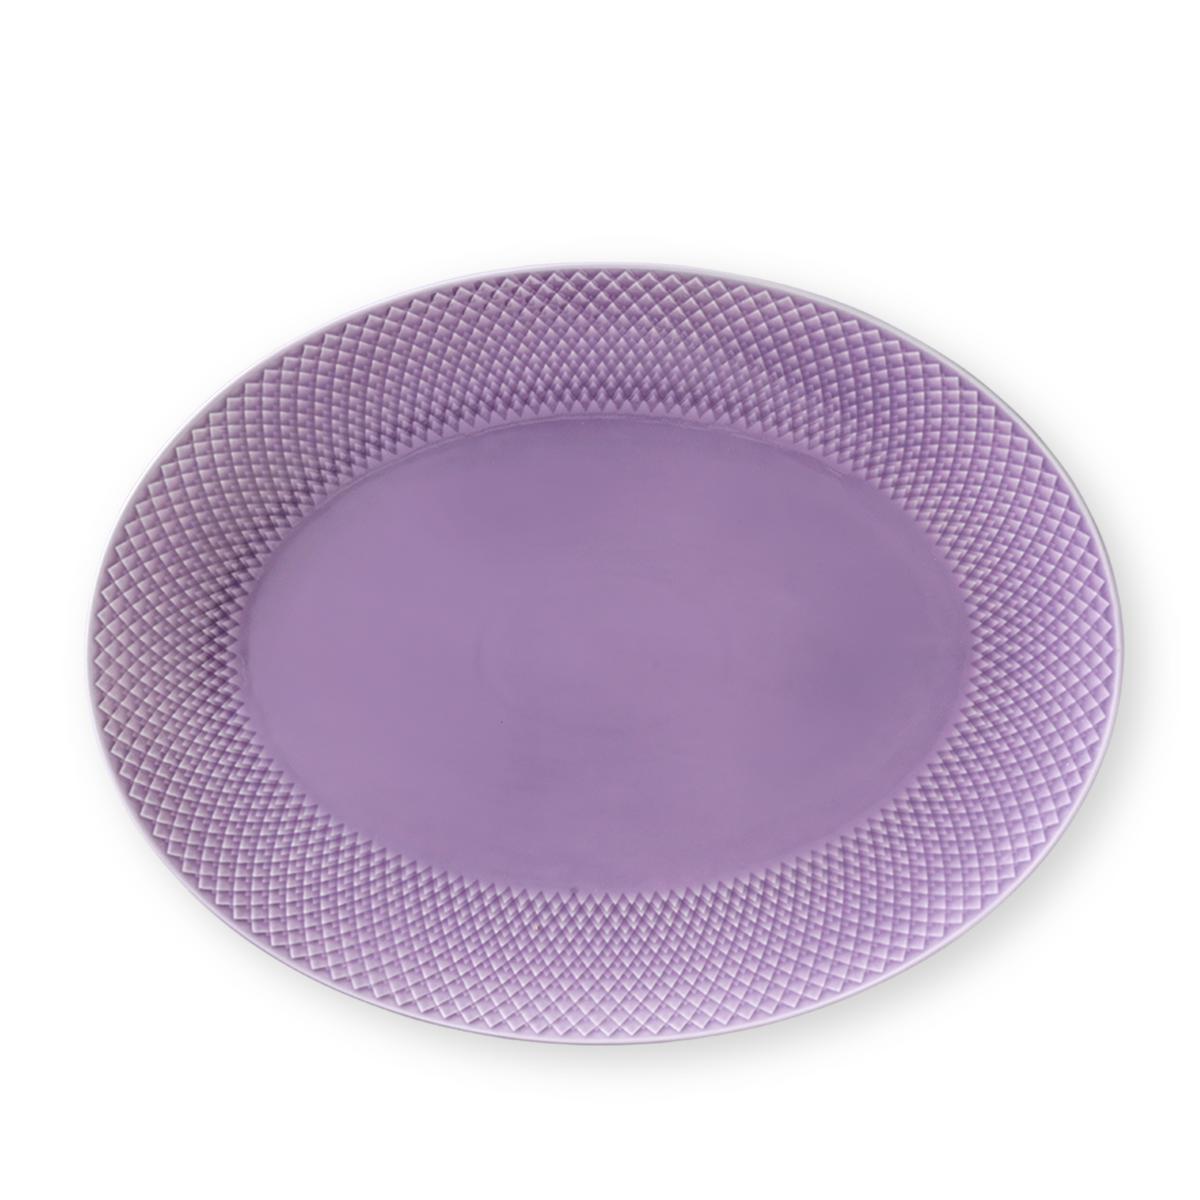 Lyngby Rhombe Placa de servicio Purple ovalado, 35 cm